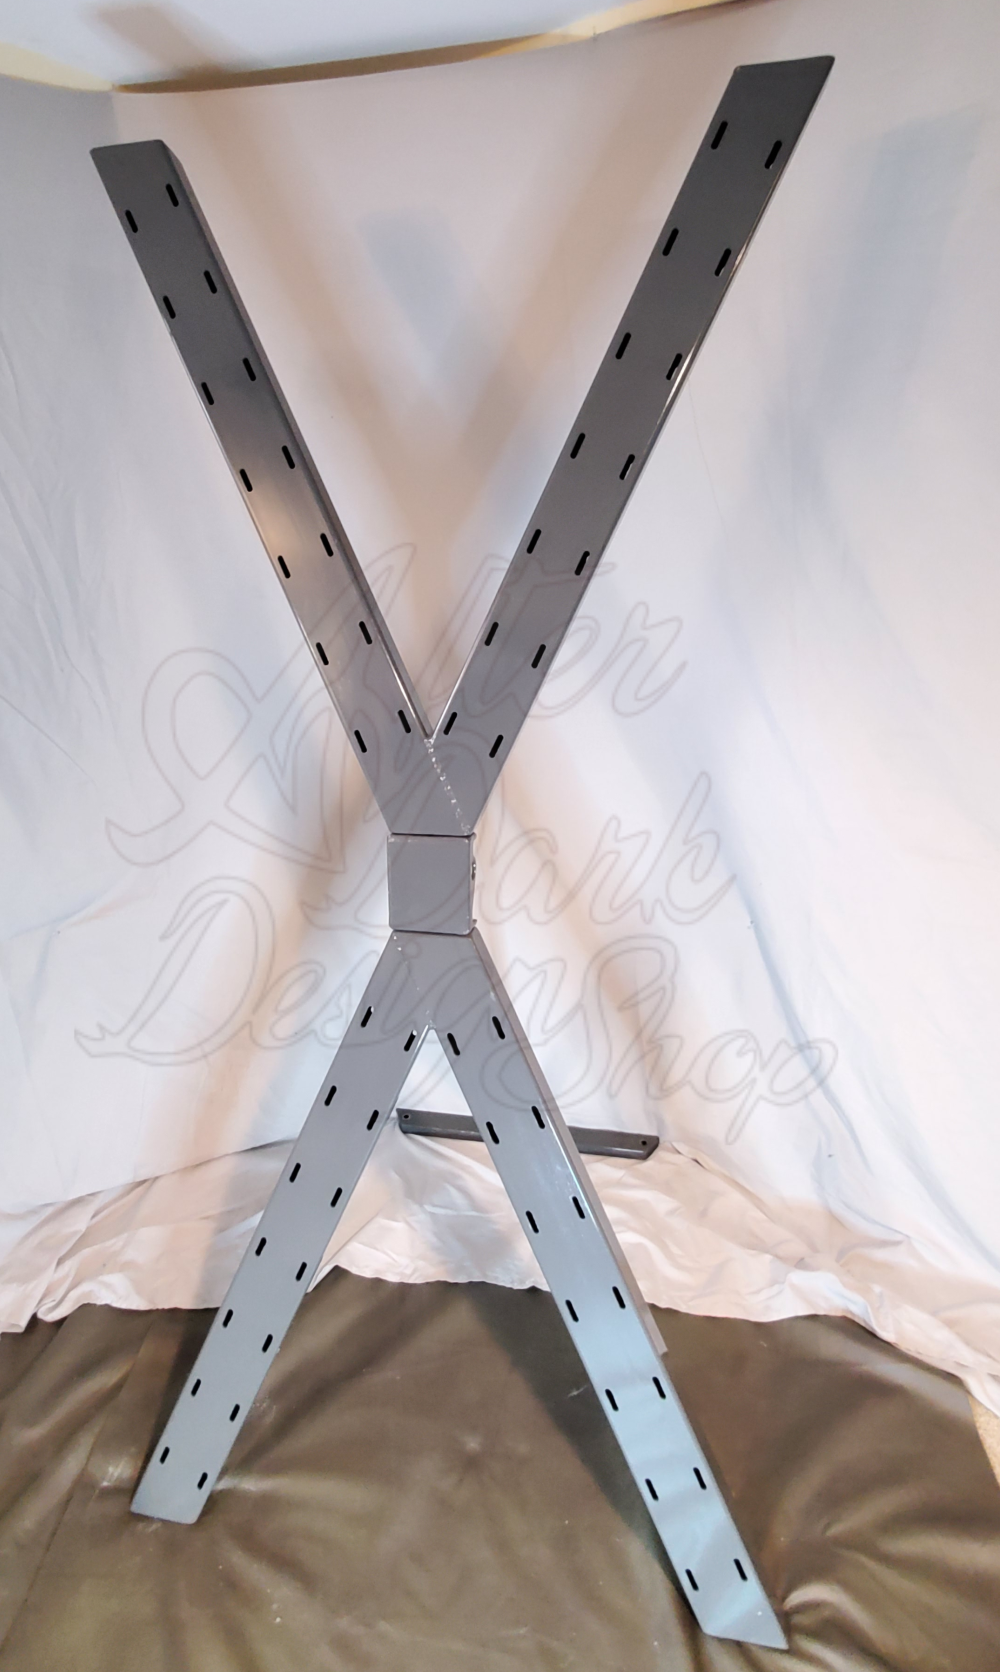 HEAVY DUTY STEEL ST ANDREW'S CROSS / SPANKING BENCH - MODULAR - LIFETIME WARRANTY photo